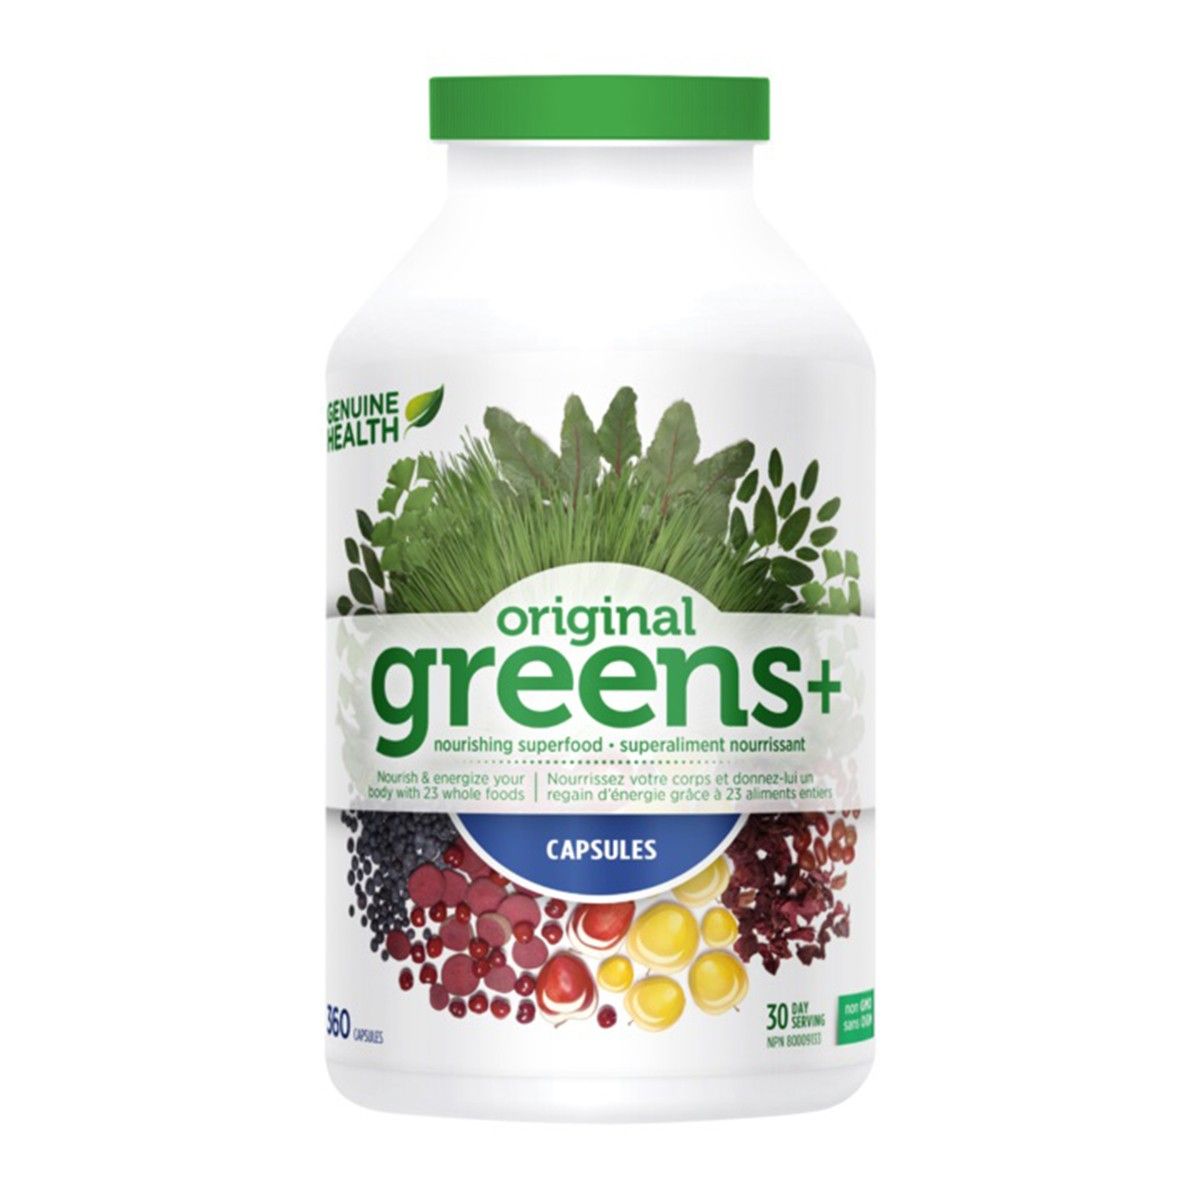 Greens + 360 capsules